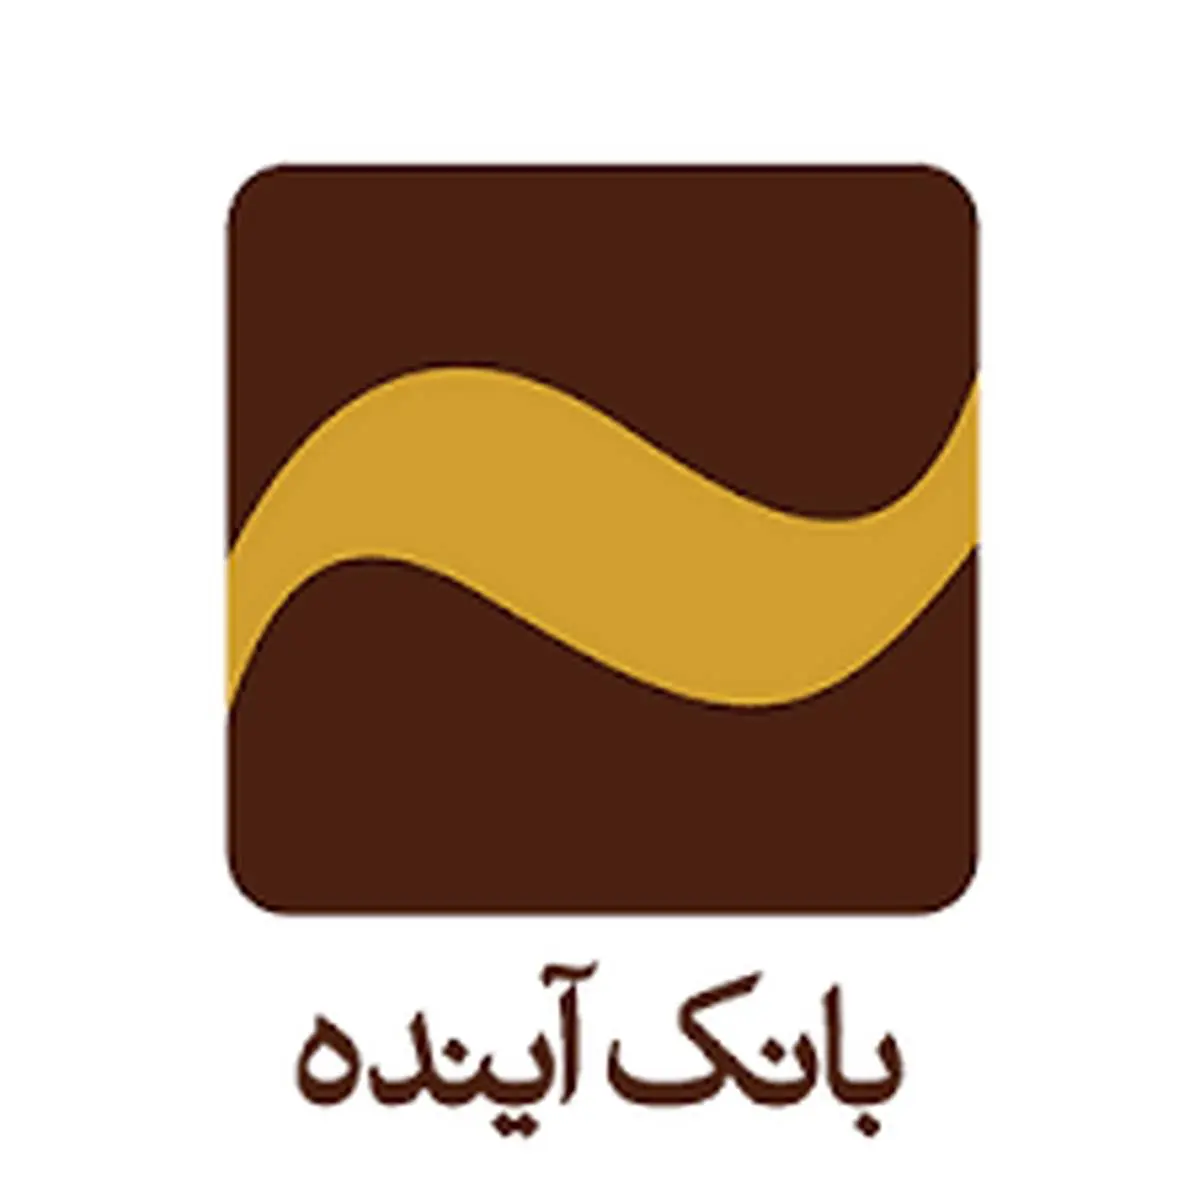 دور جدید همکاری بانک آینده و شرکت بیمه ایران آغاز شد
